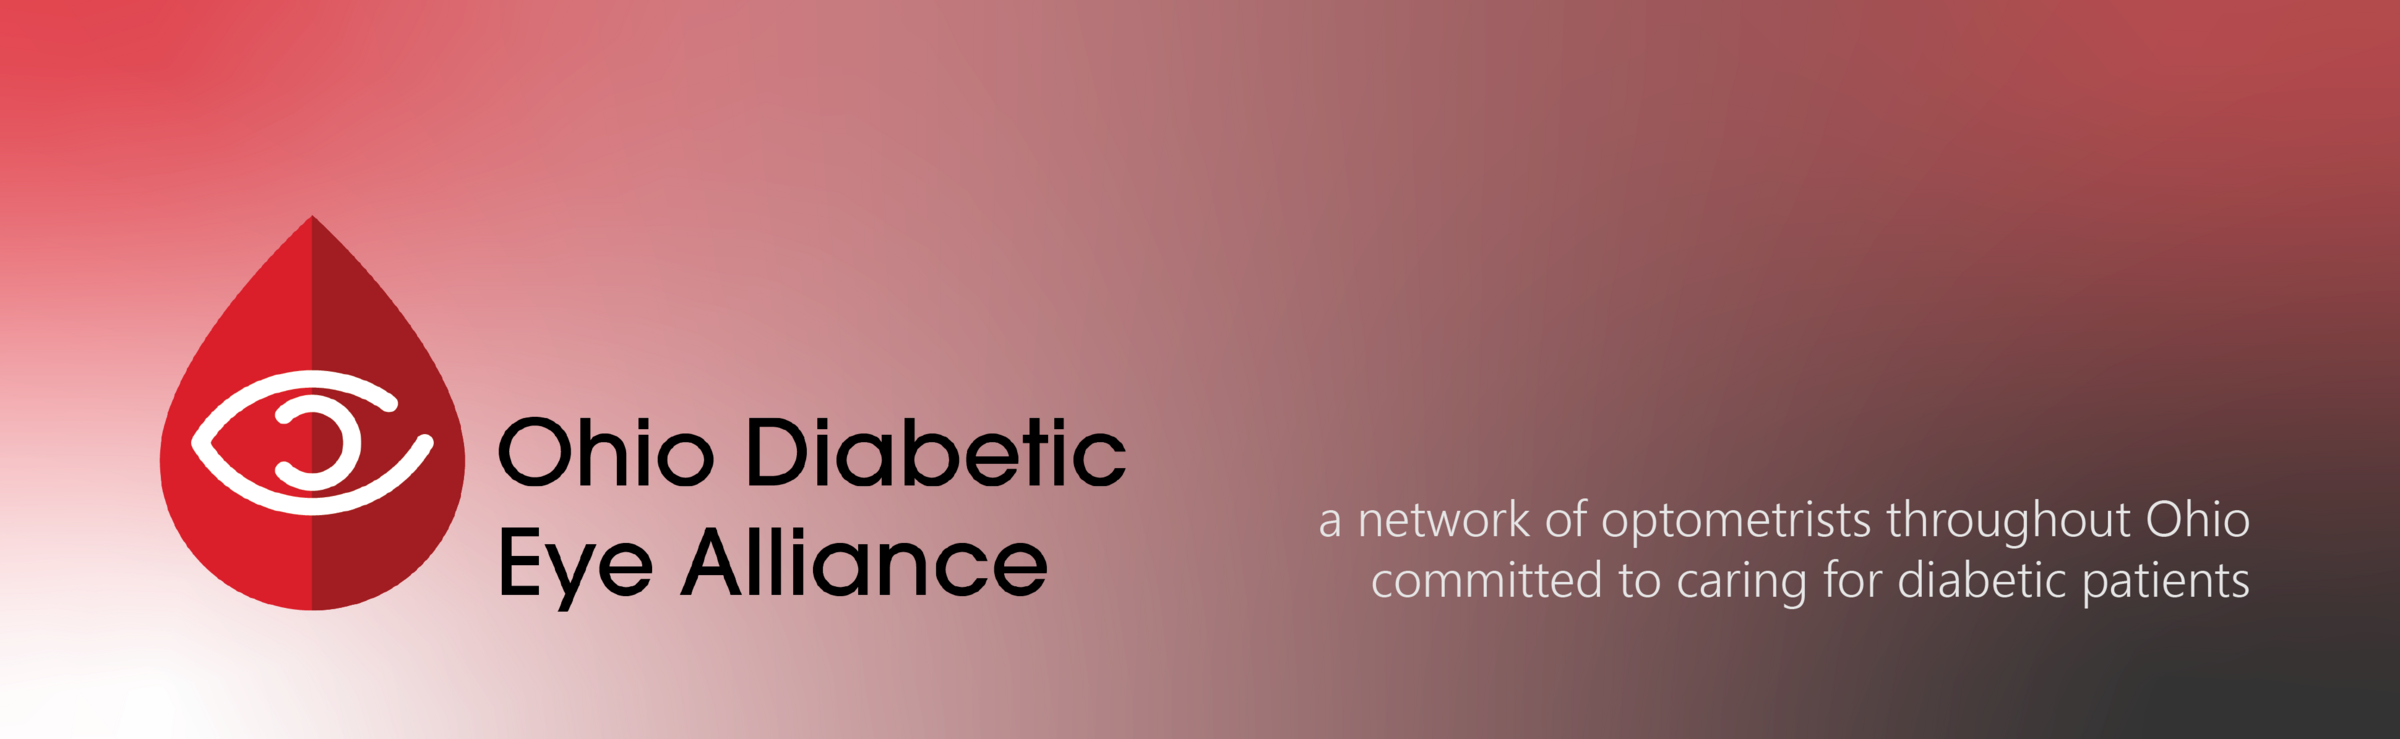 Ohio Diabetic Eye Alliance